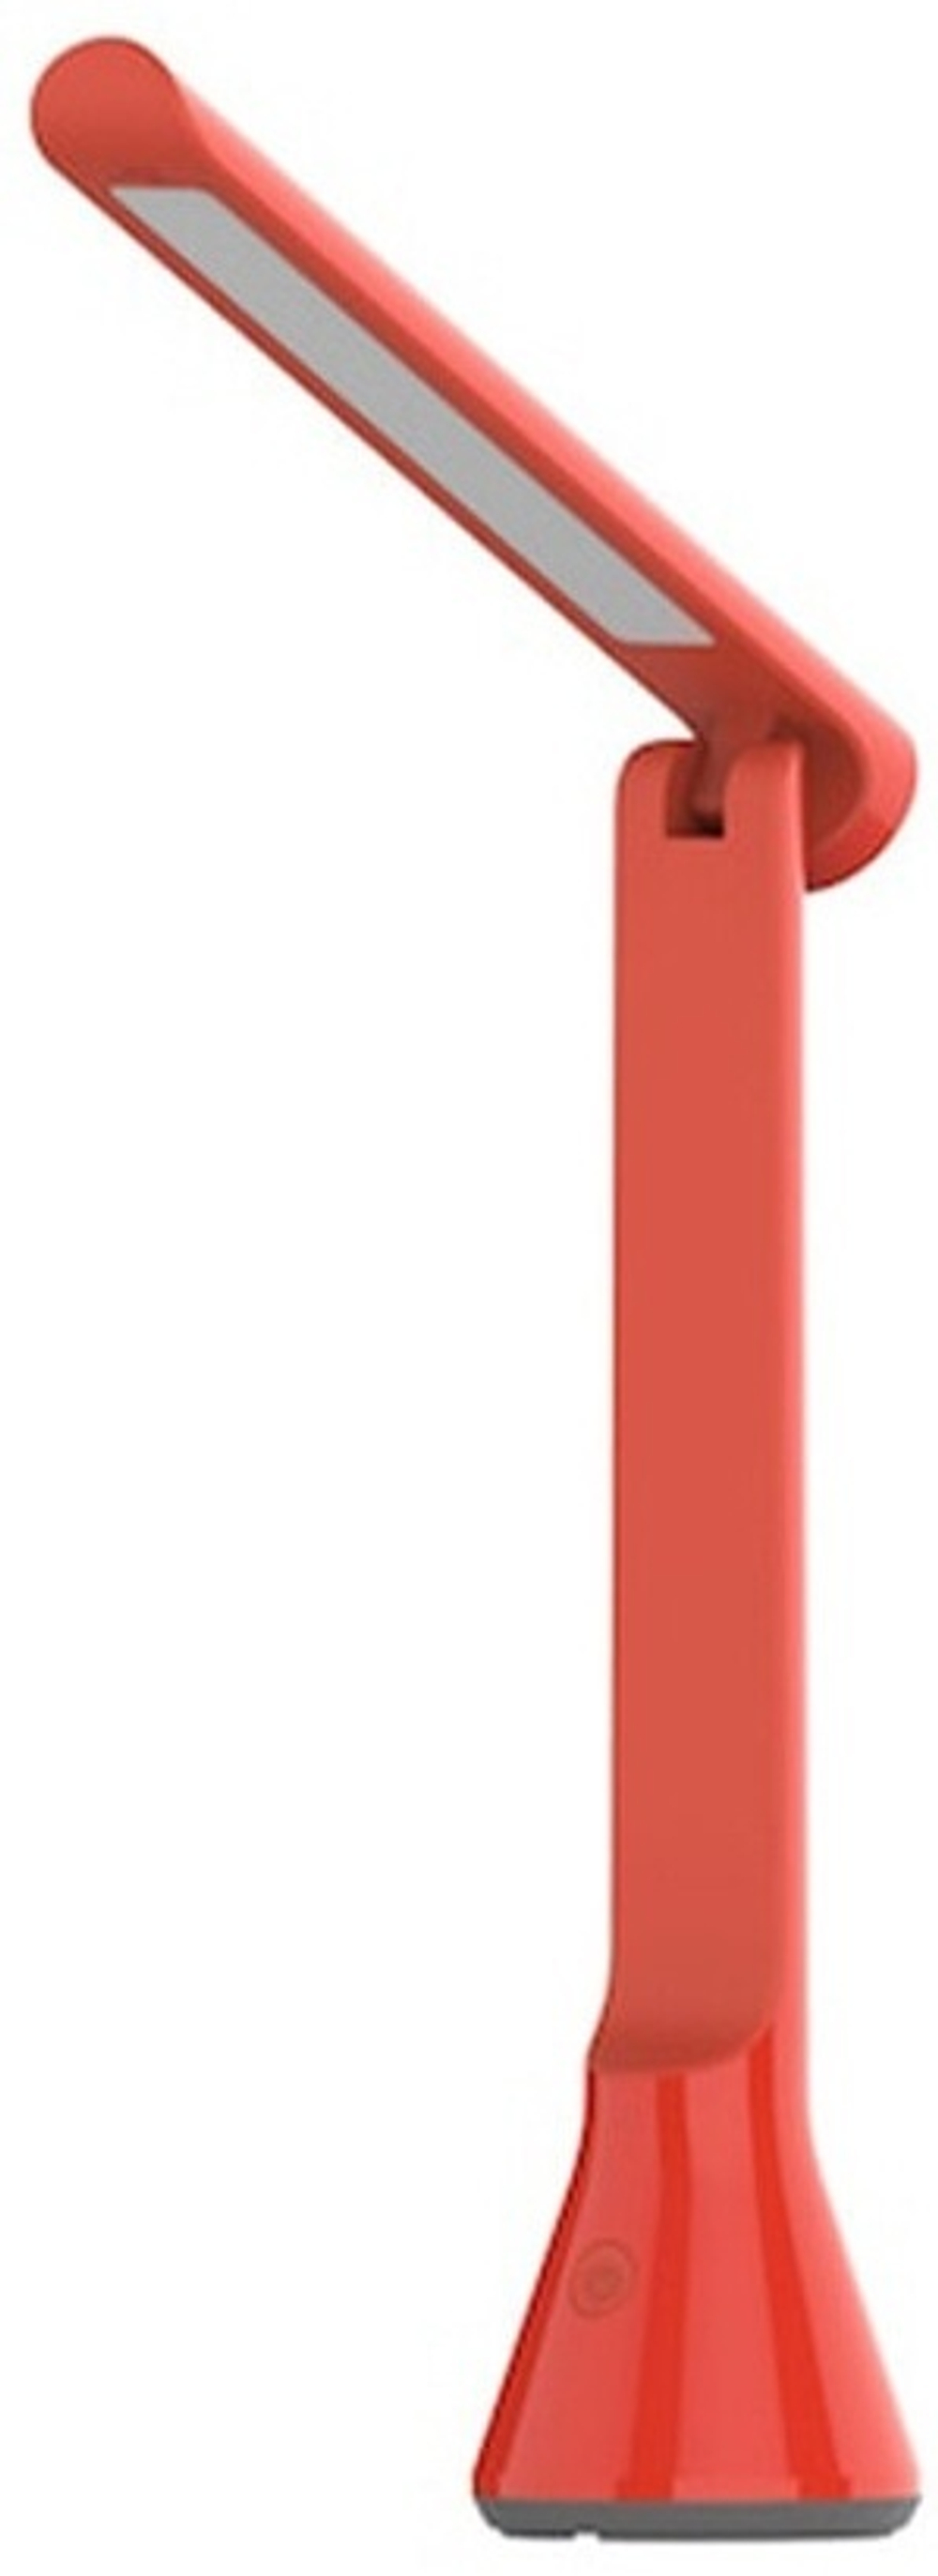 Настольная лампа Yeelight Yeelight Folding Desk Lamp Z1 - Red LED, 5 Вт, пластик